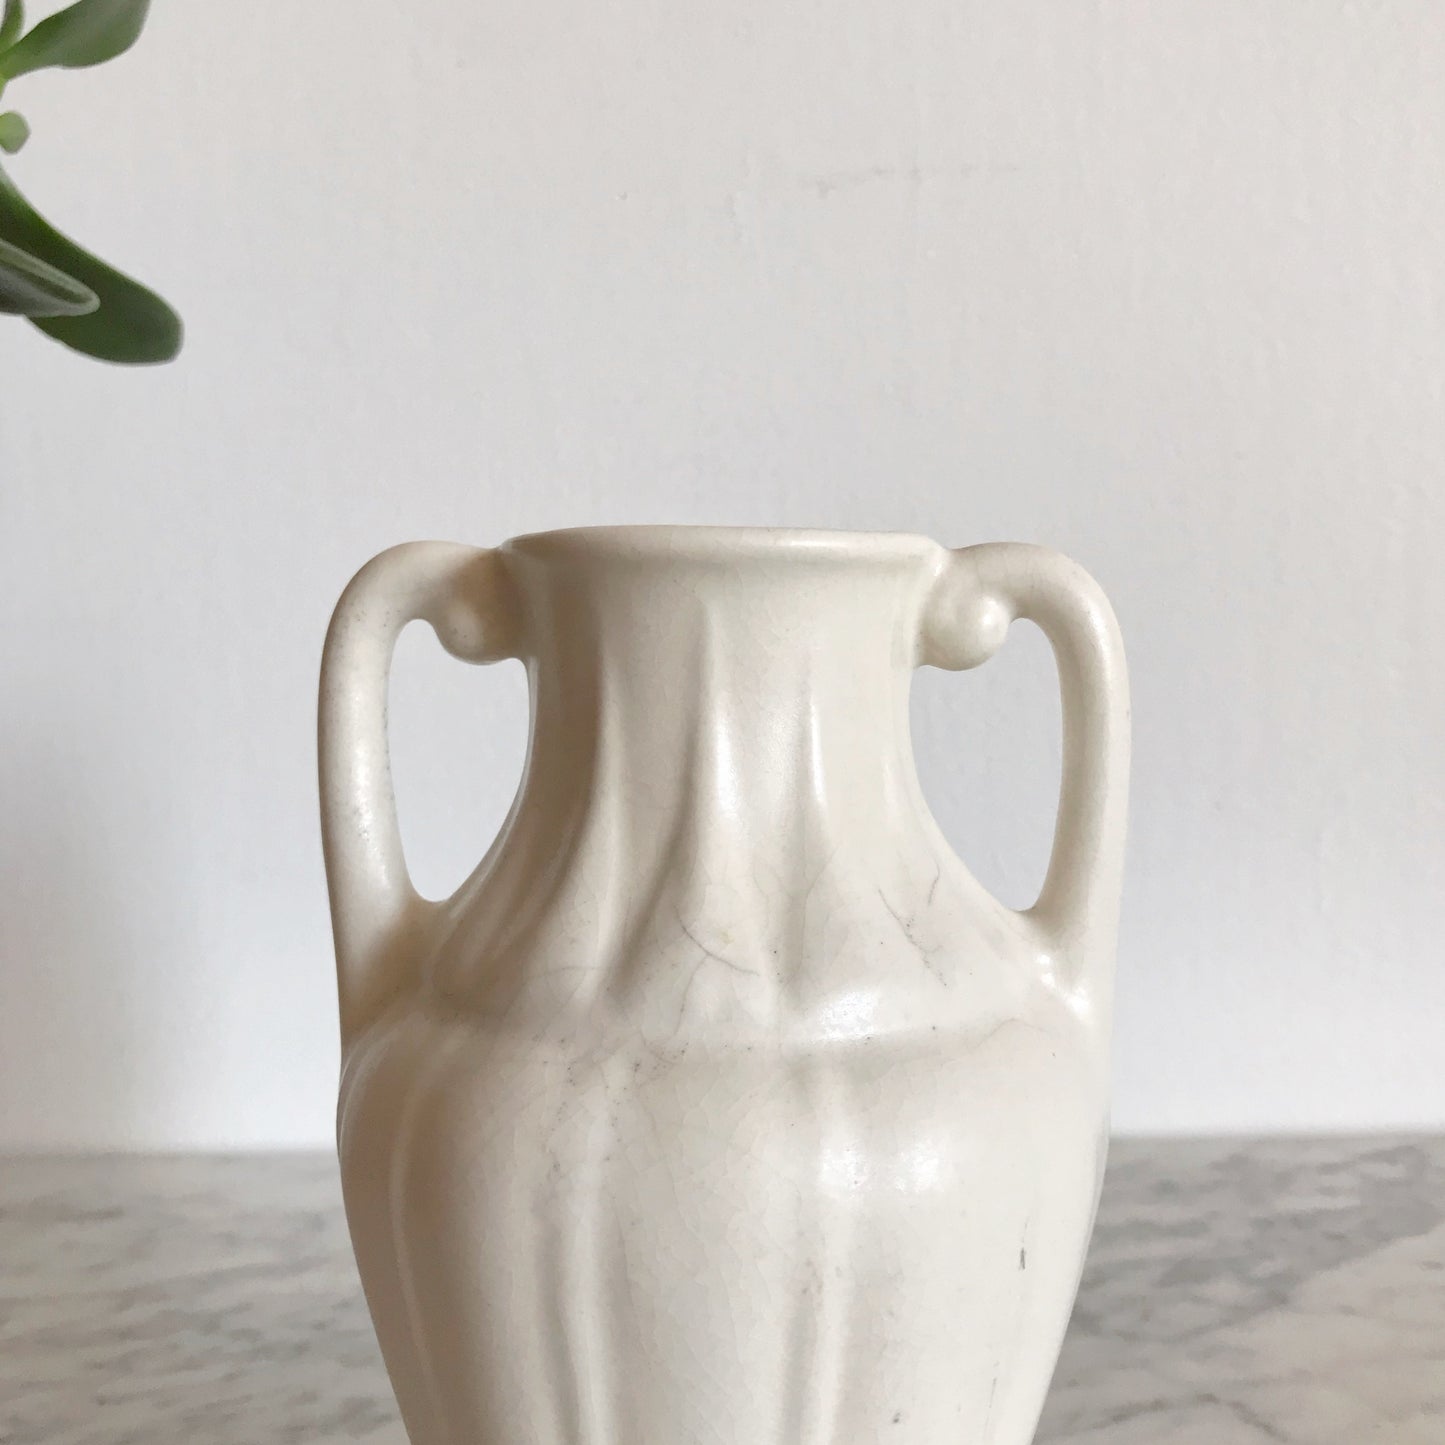 Antique Ceramic Vase / Vessel